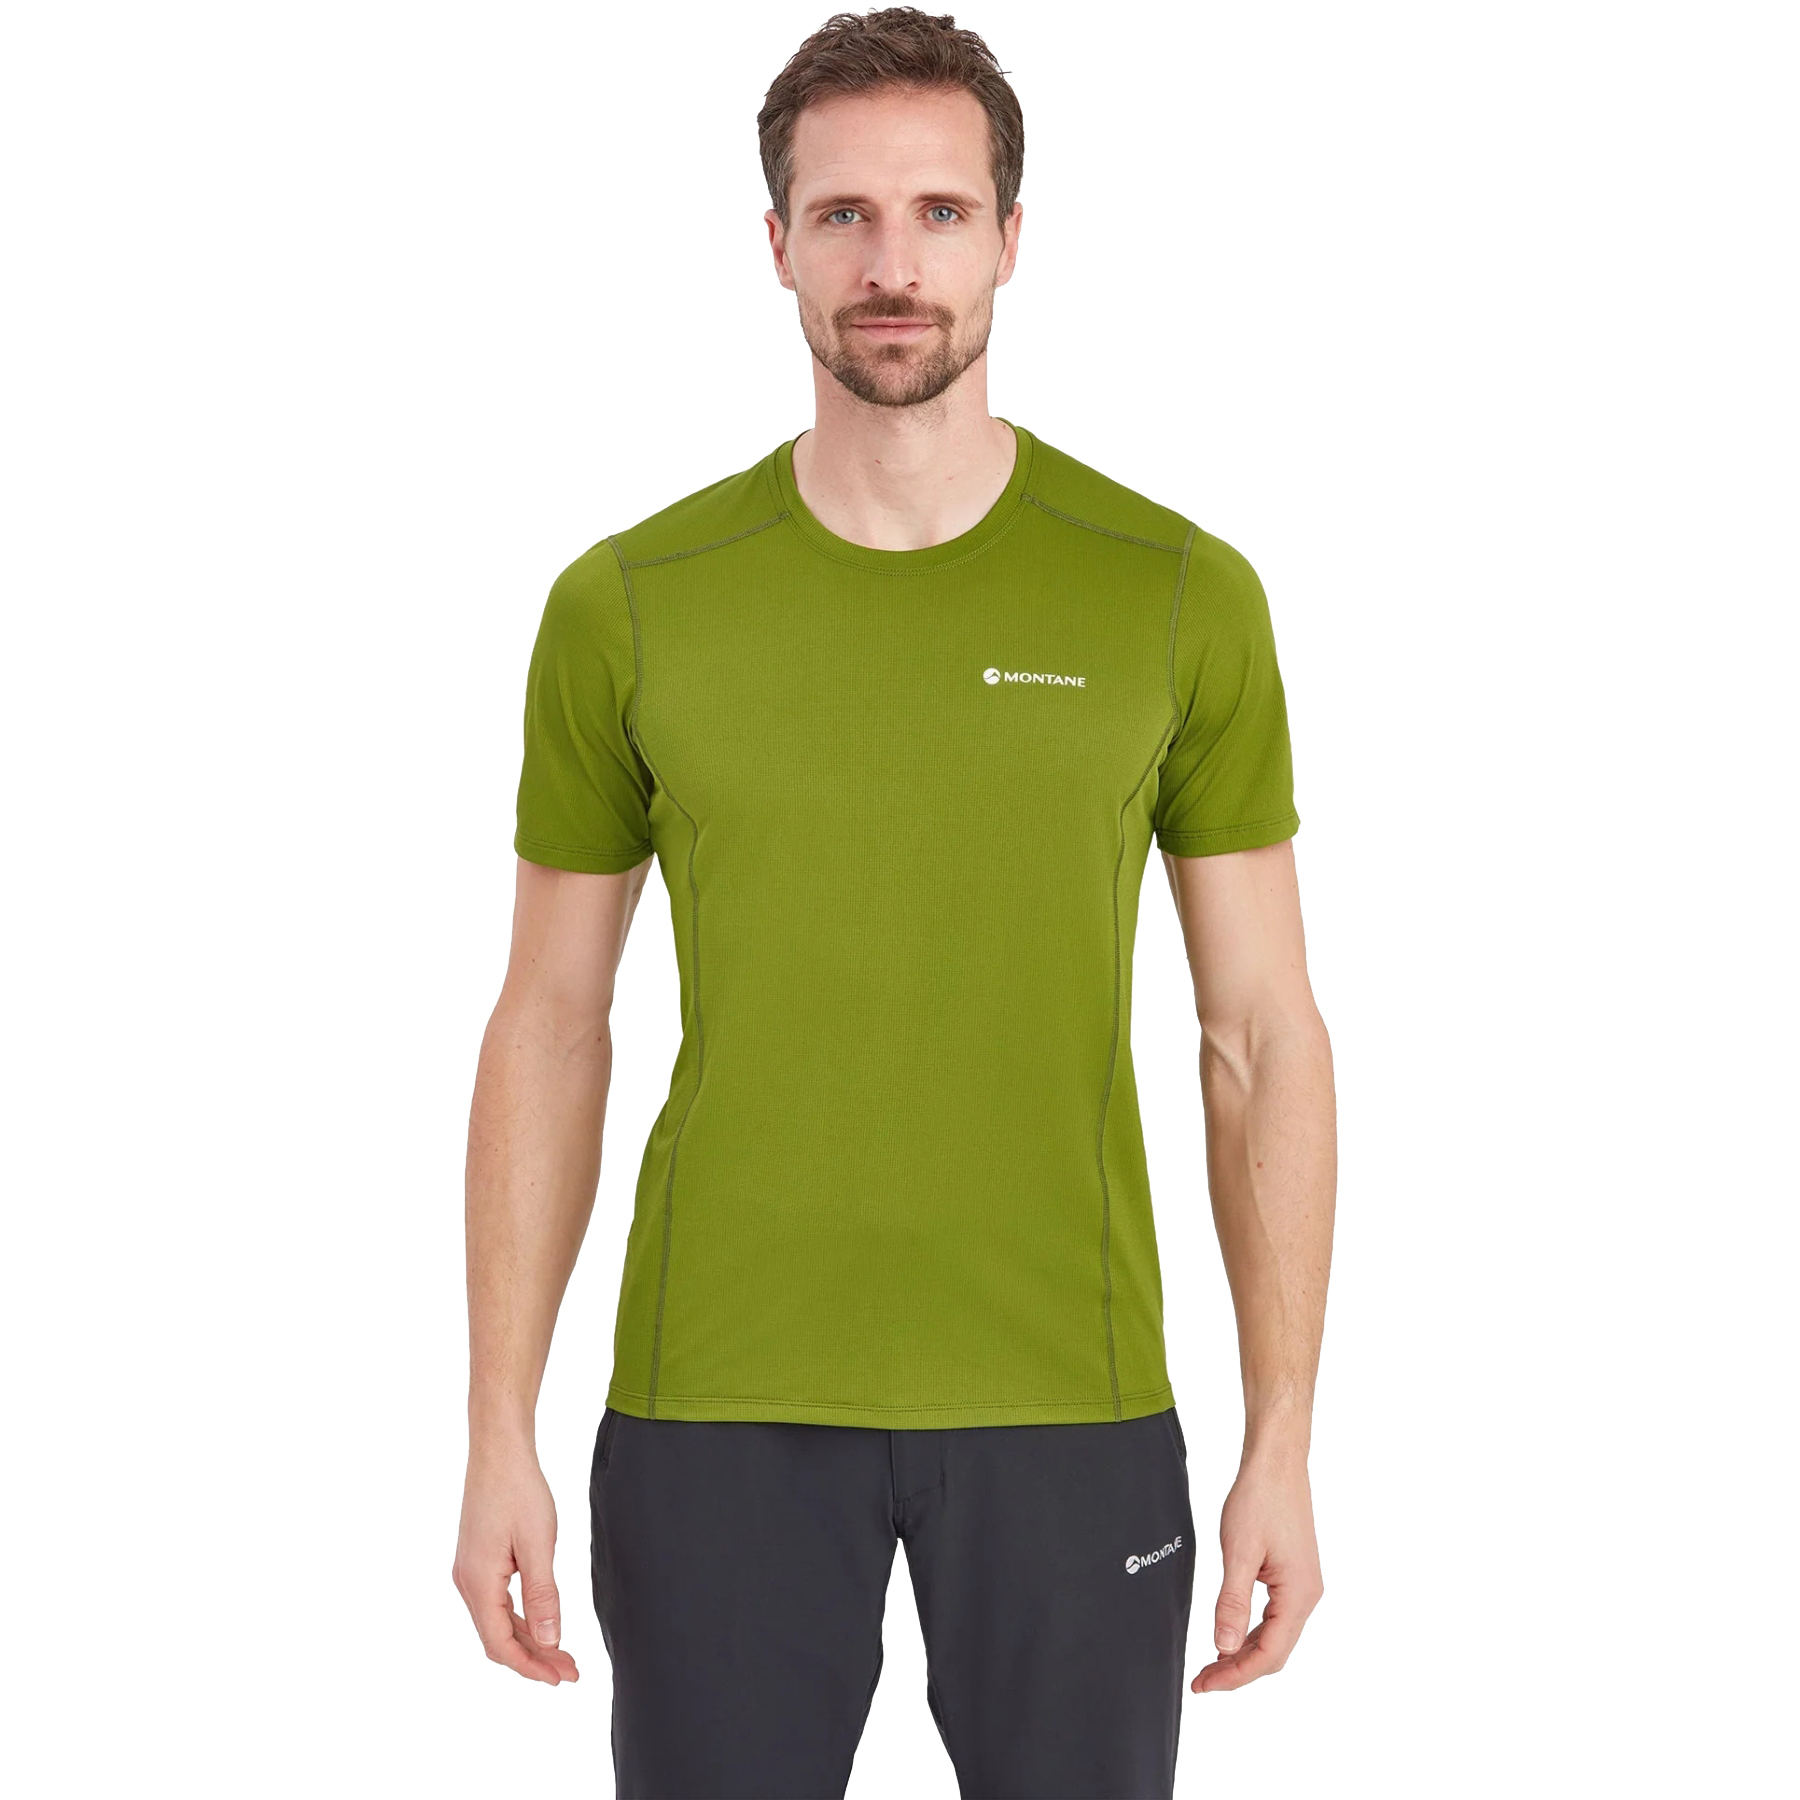 Produktbild von Montane Dart Lite T-Shirt - alder green